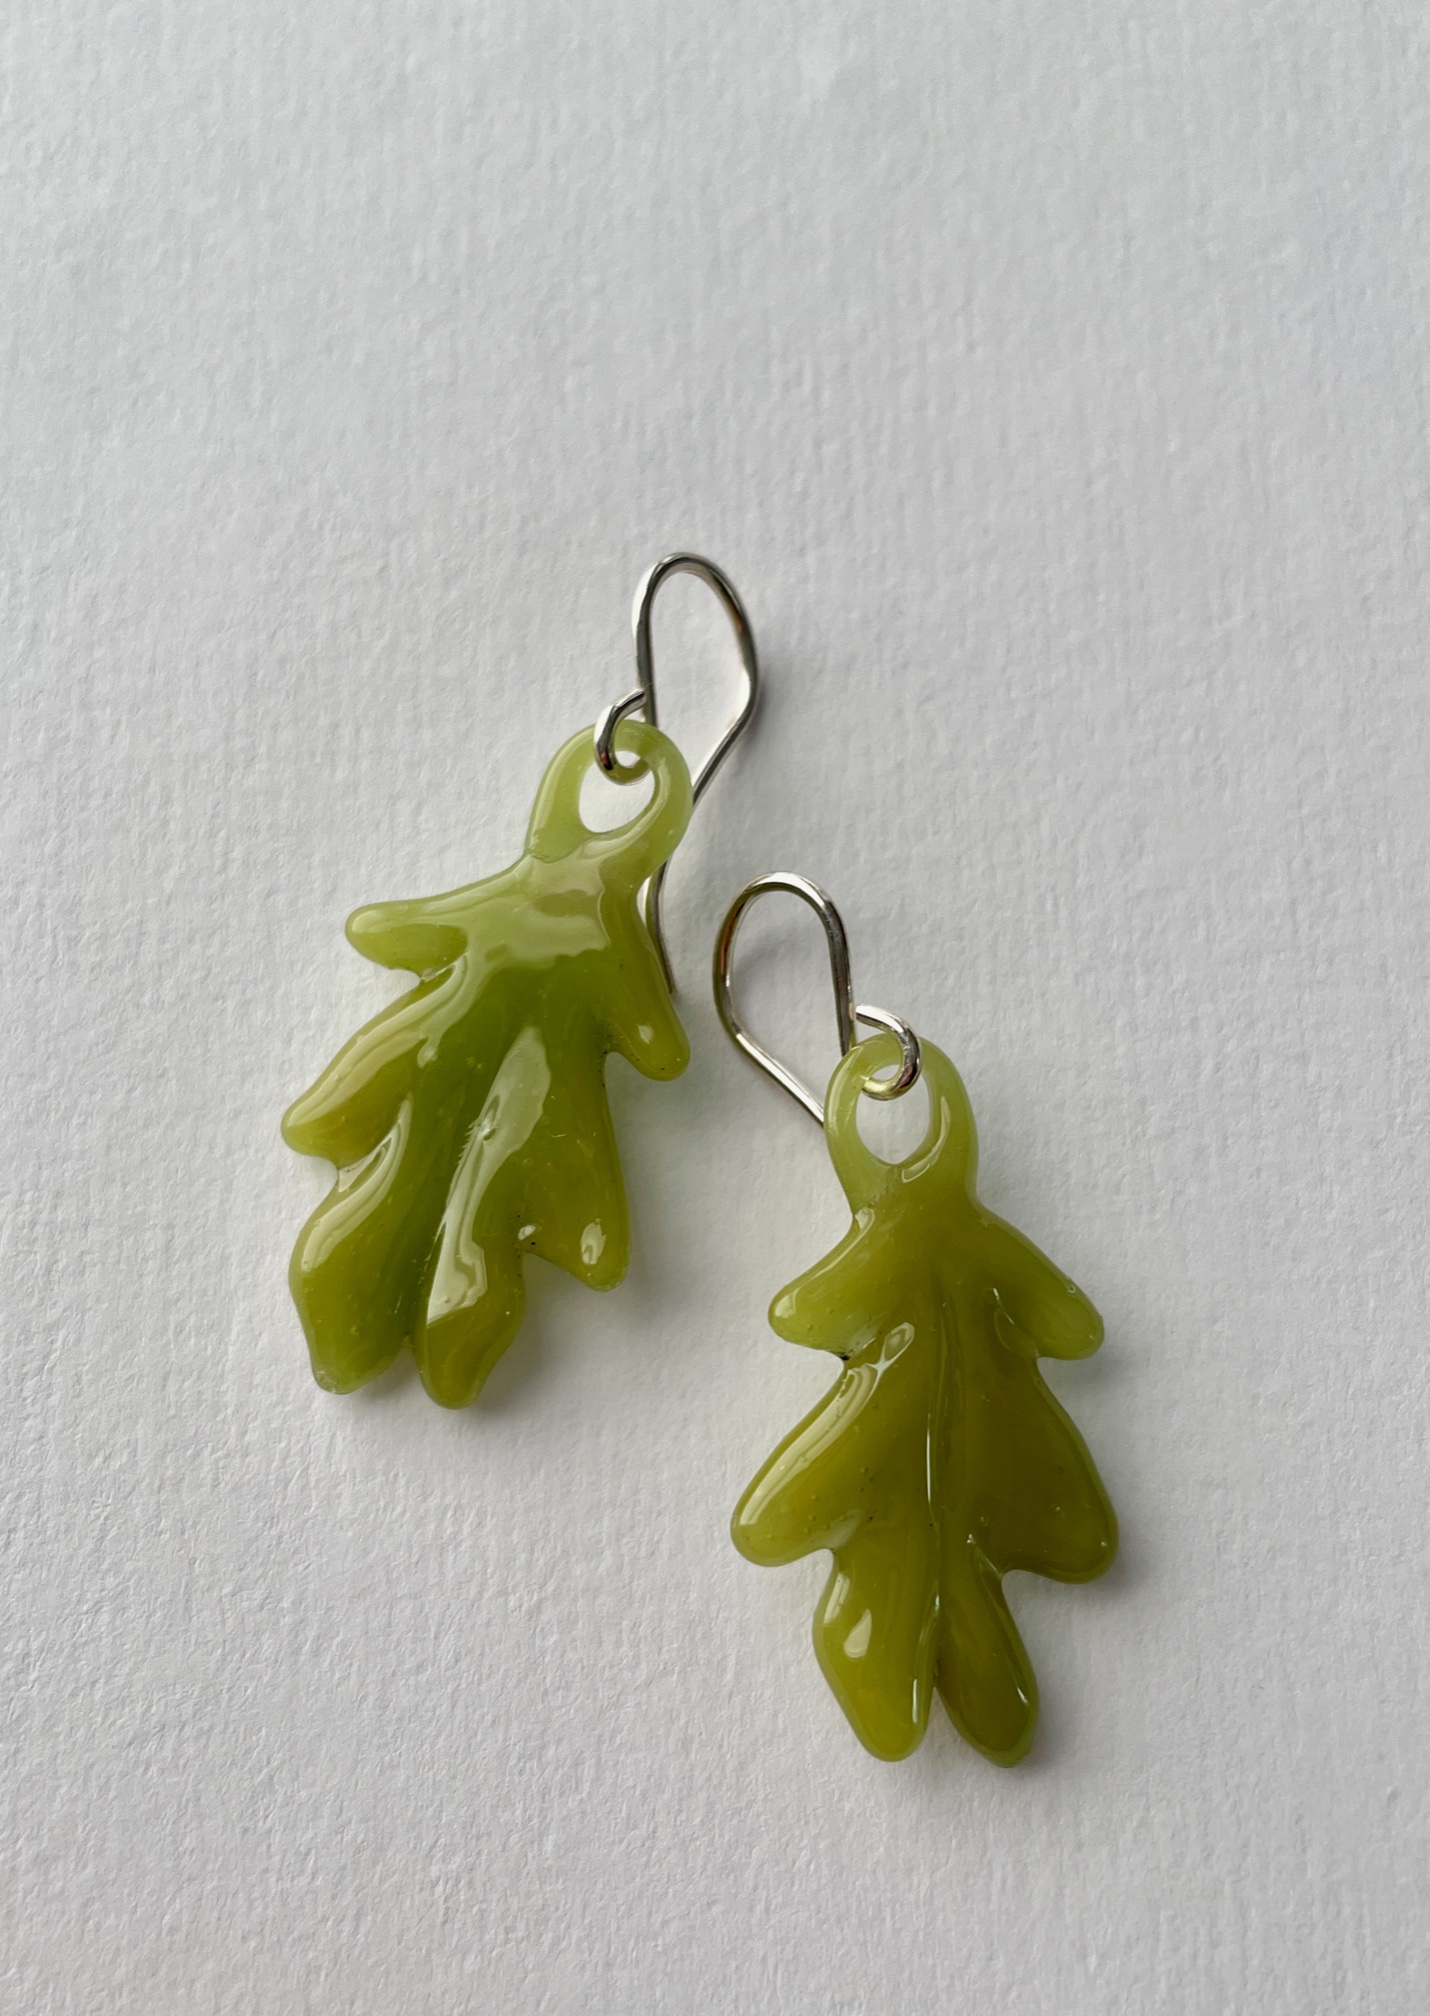 Green Oak Leaf Earrings on Sterling Wires